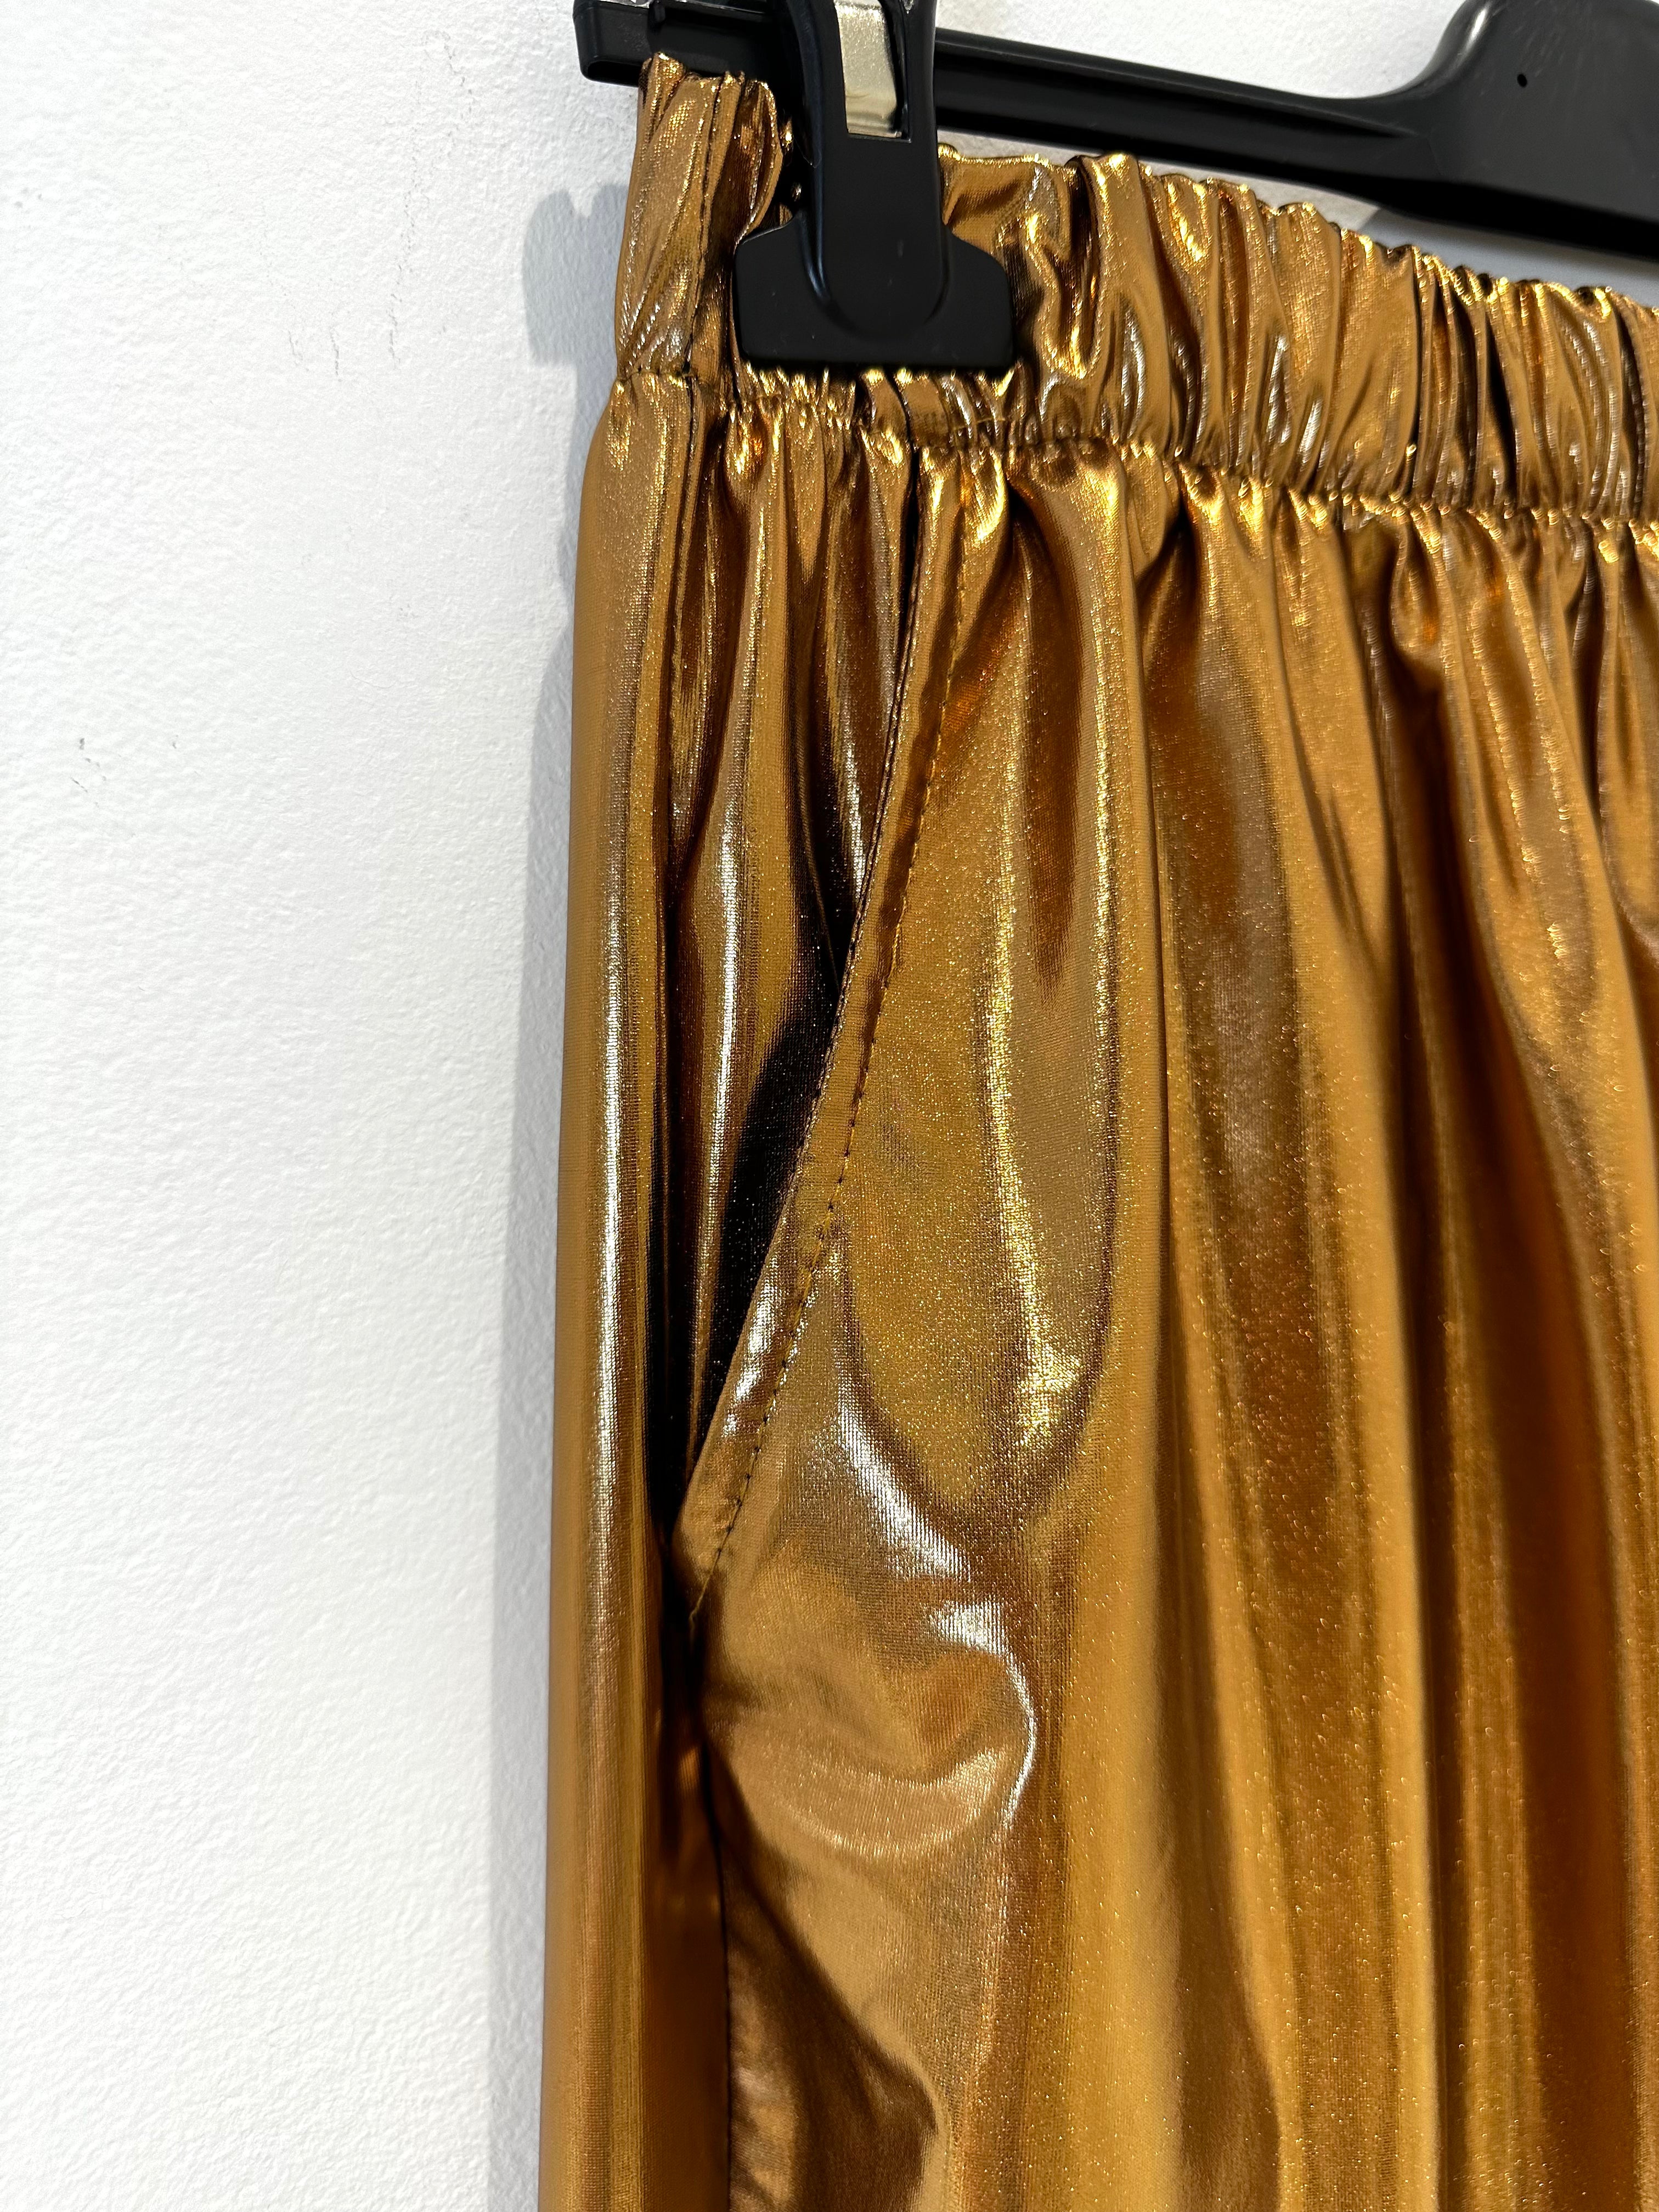 Calças metalizadas maleáveis com elástico à cintura apresentados by Tanzanna dourado metalizado pormenor.